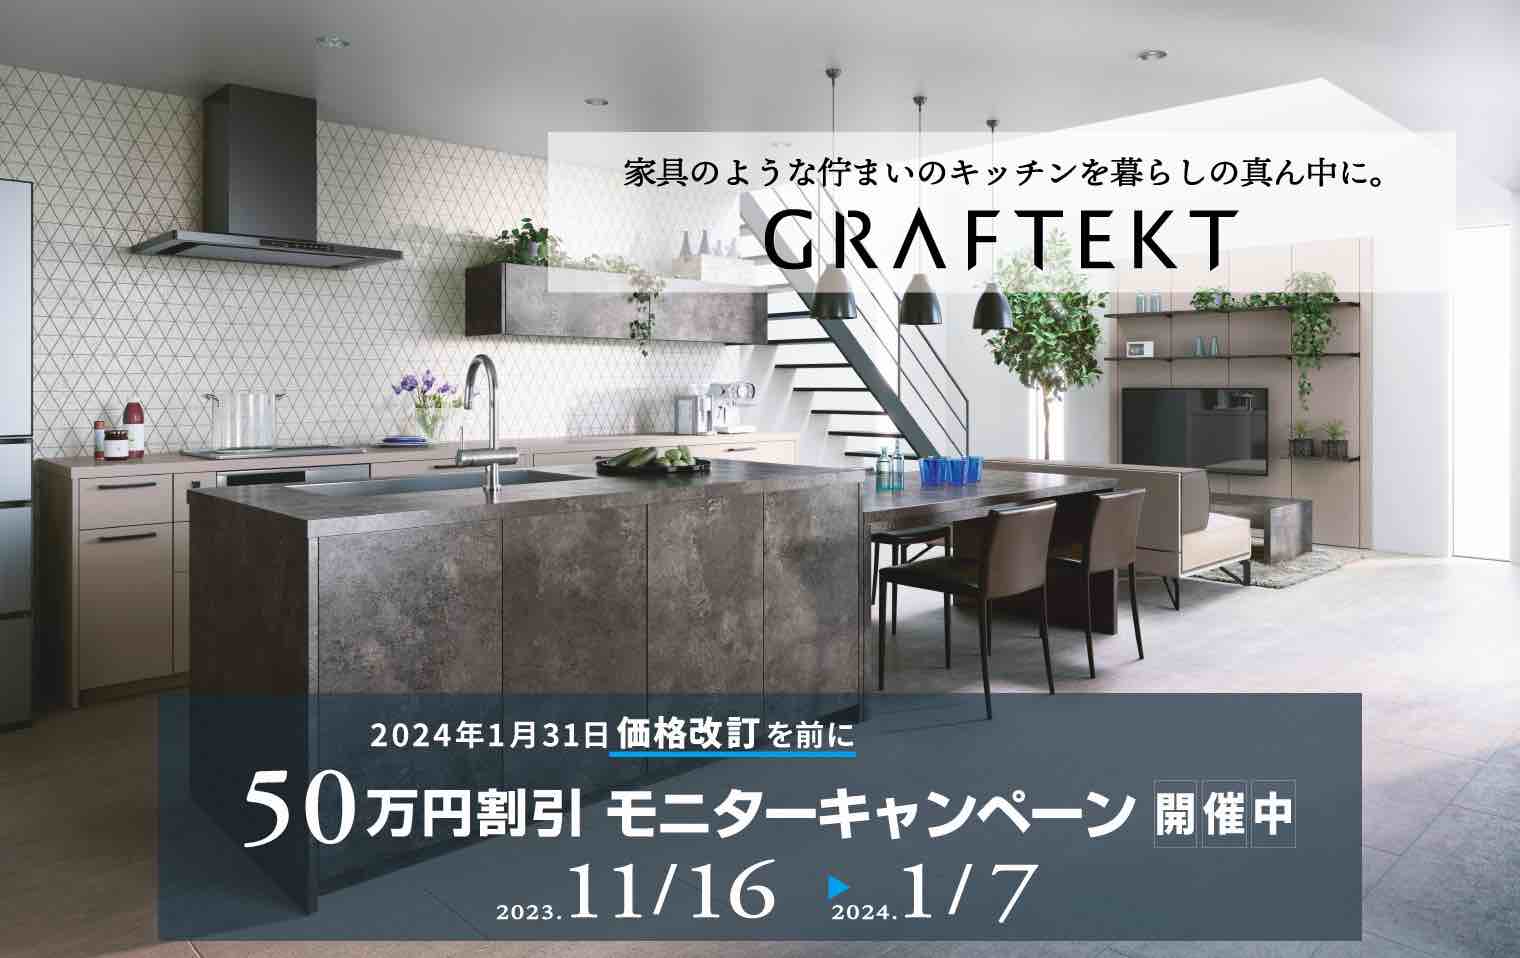 GRAFTEKT50万円割引モニターキャンペーン開催中(2023/11/16 ～ 2024/1/7)